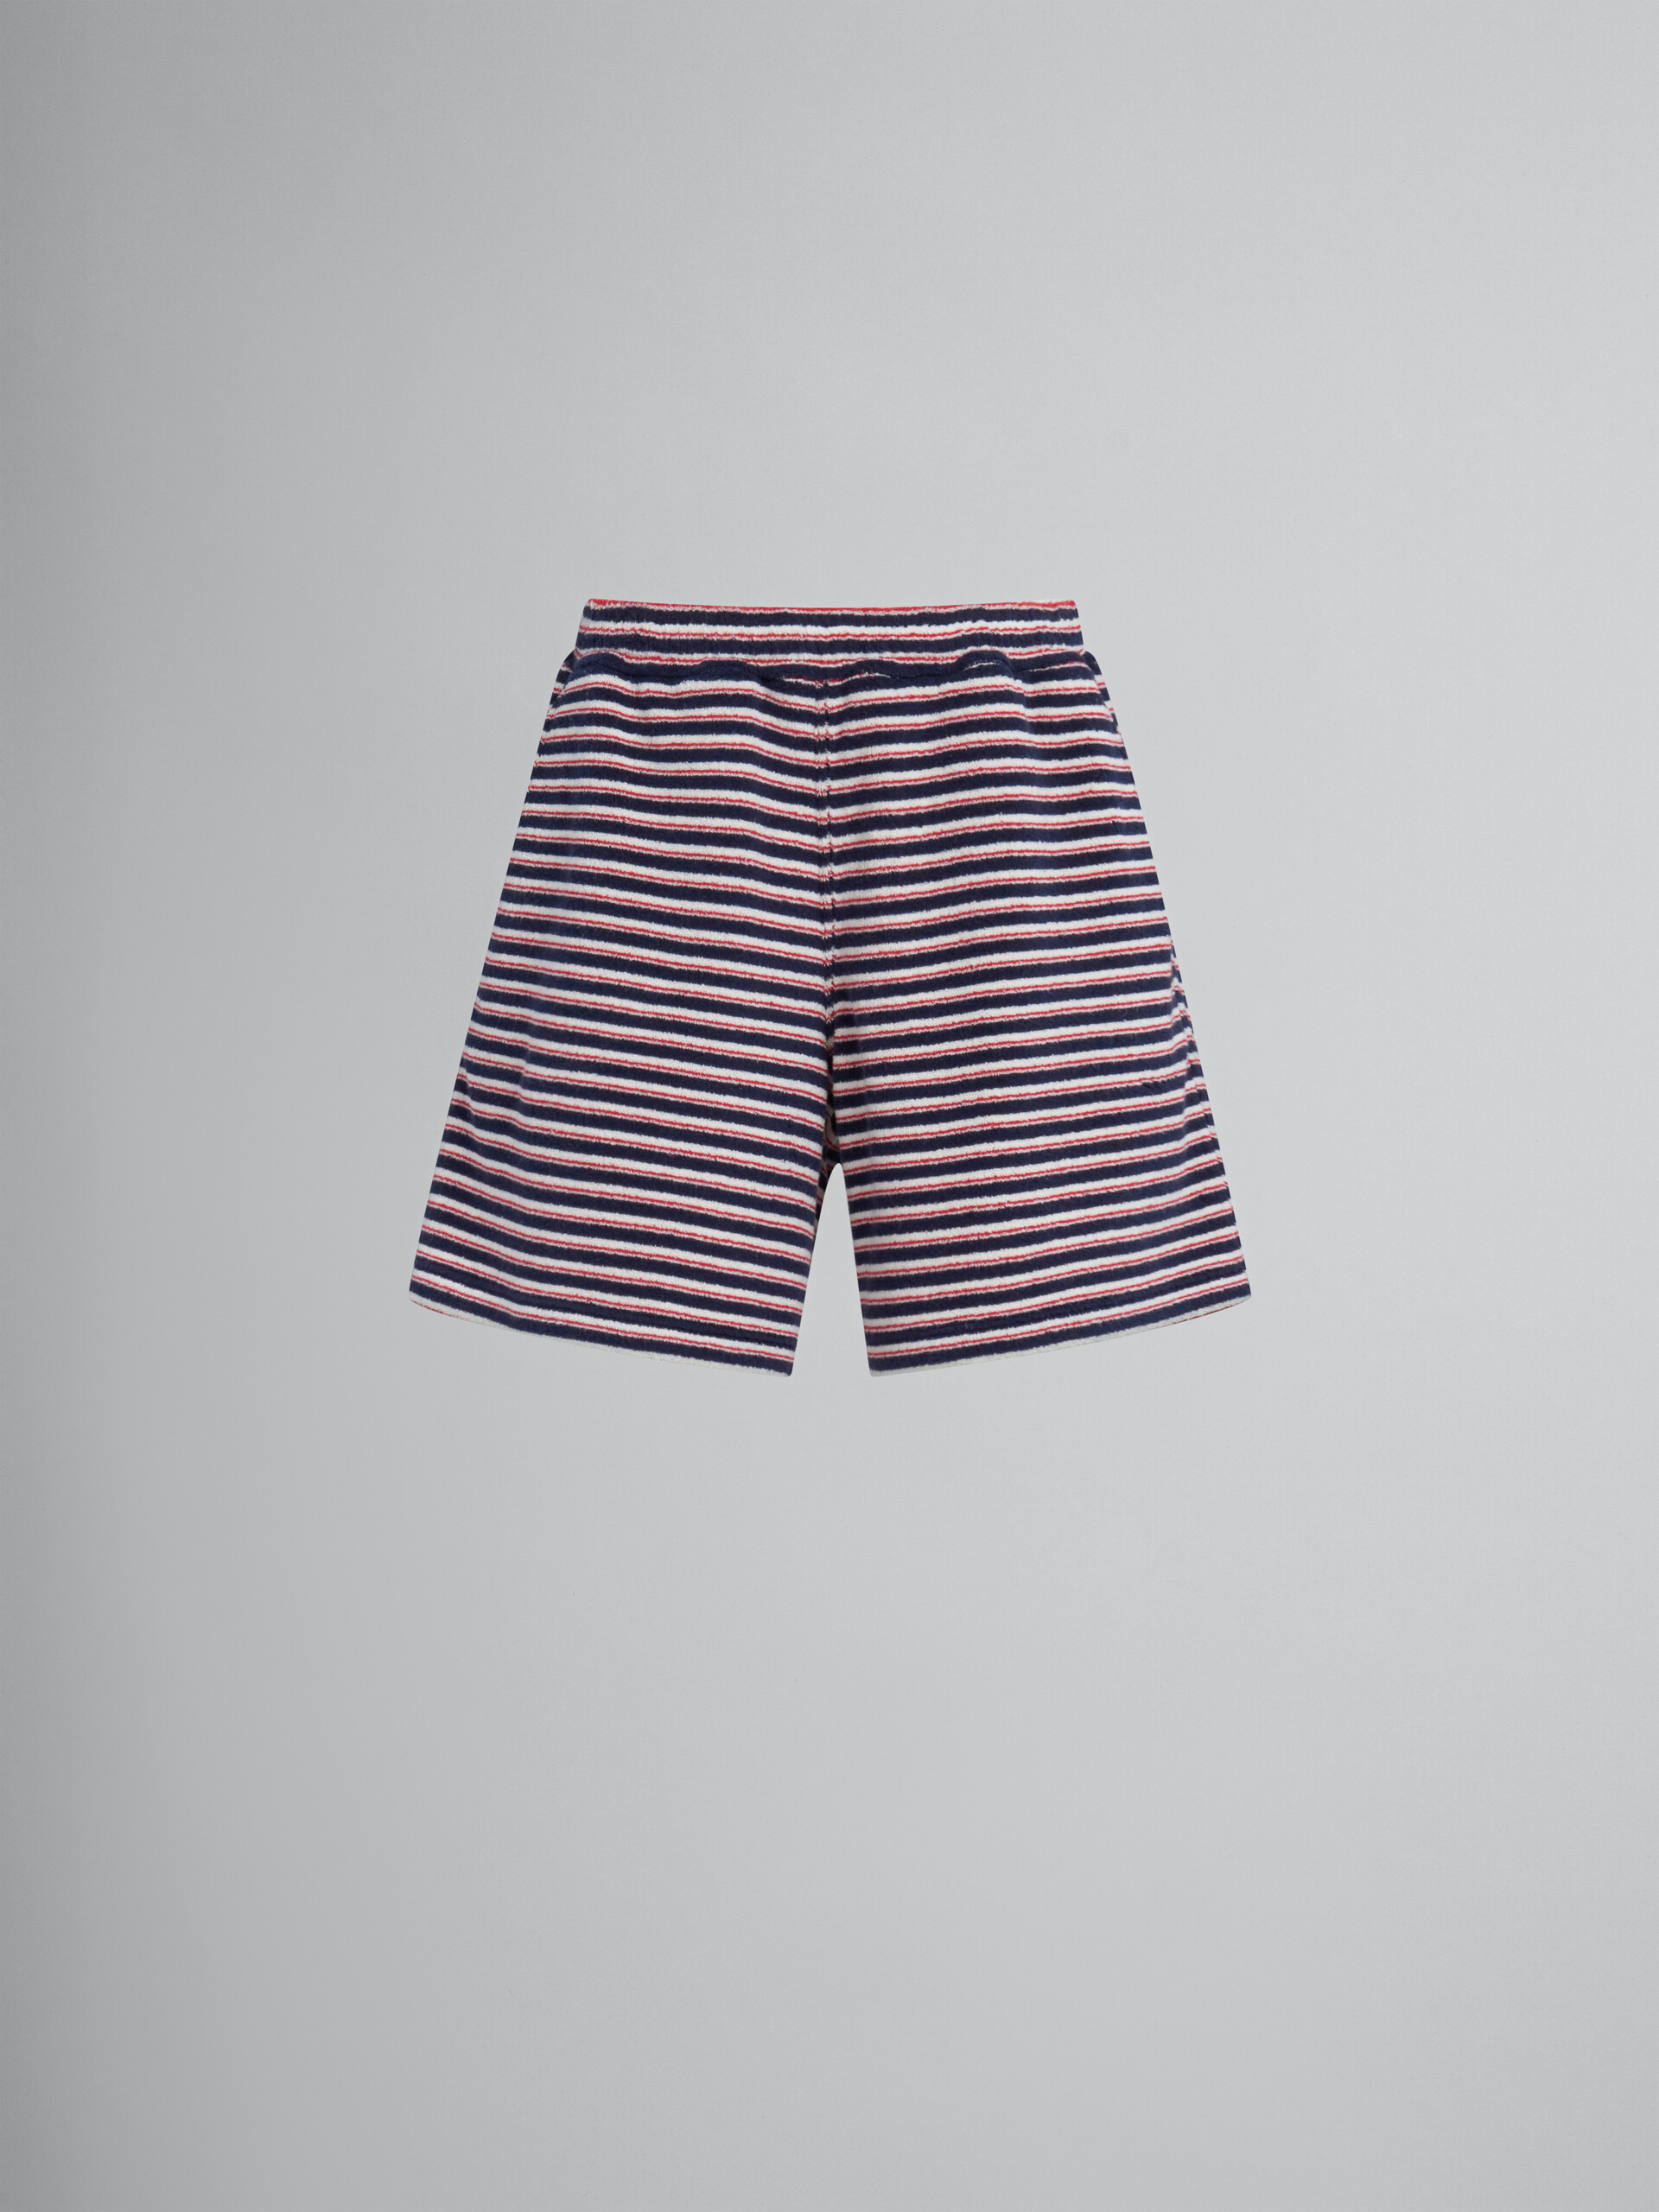 Short en tissu-éponge rayé bleu et rouge - Pantalons - Image 1